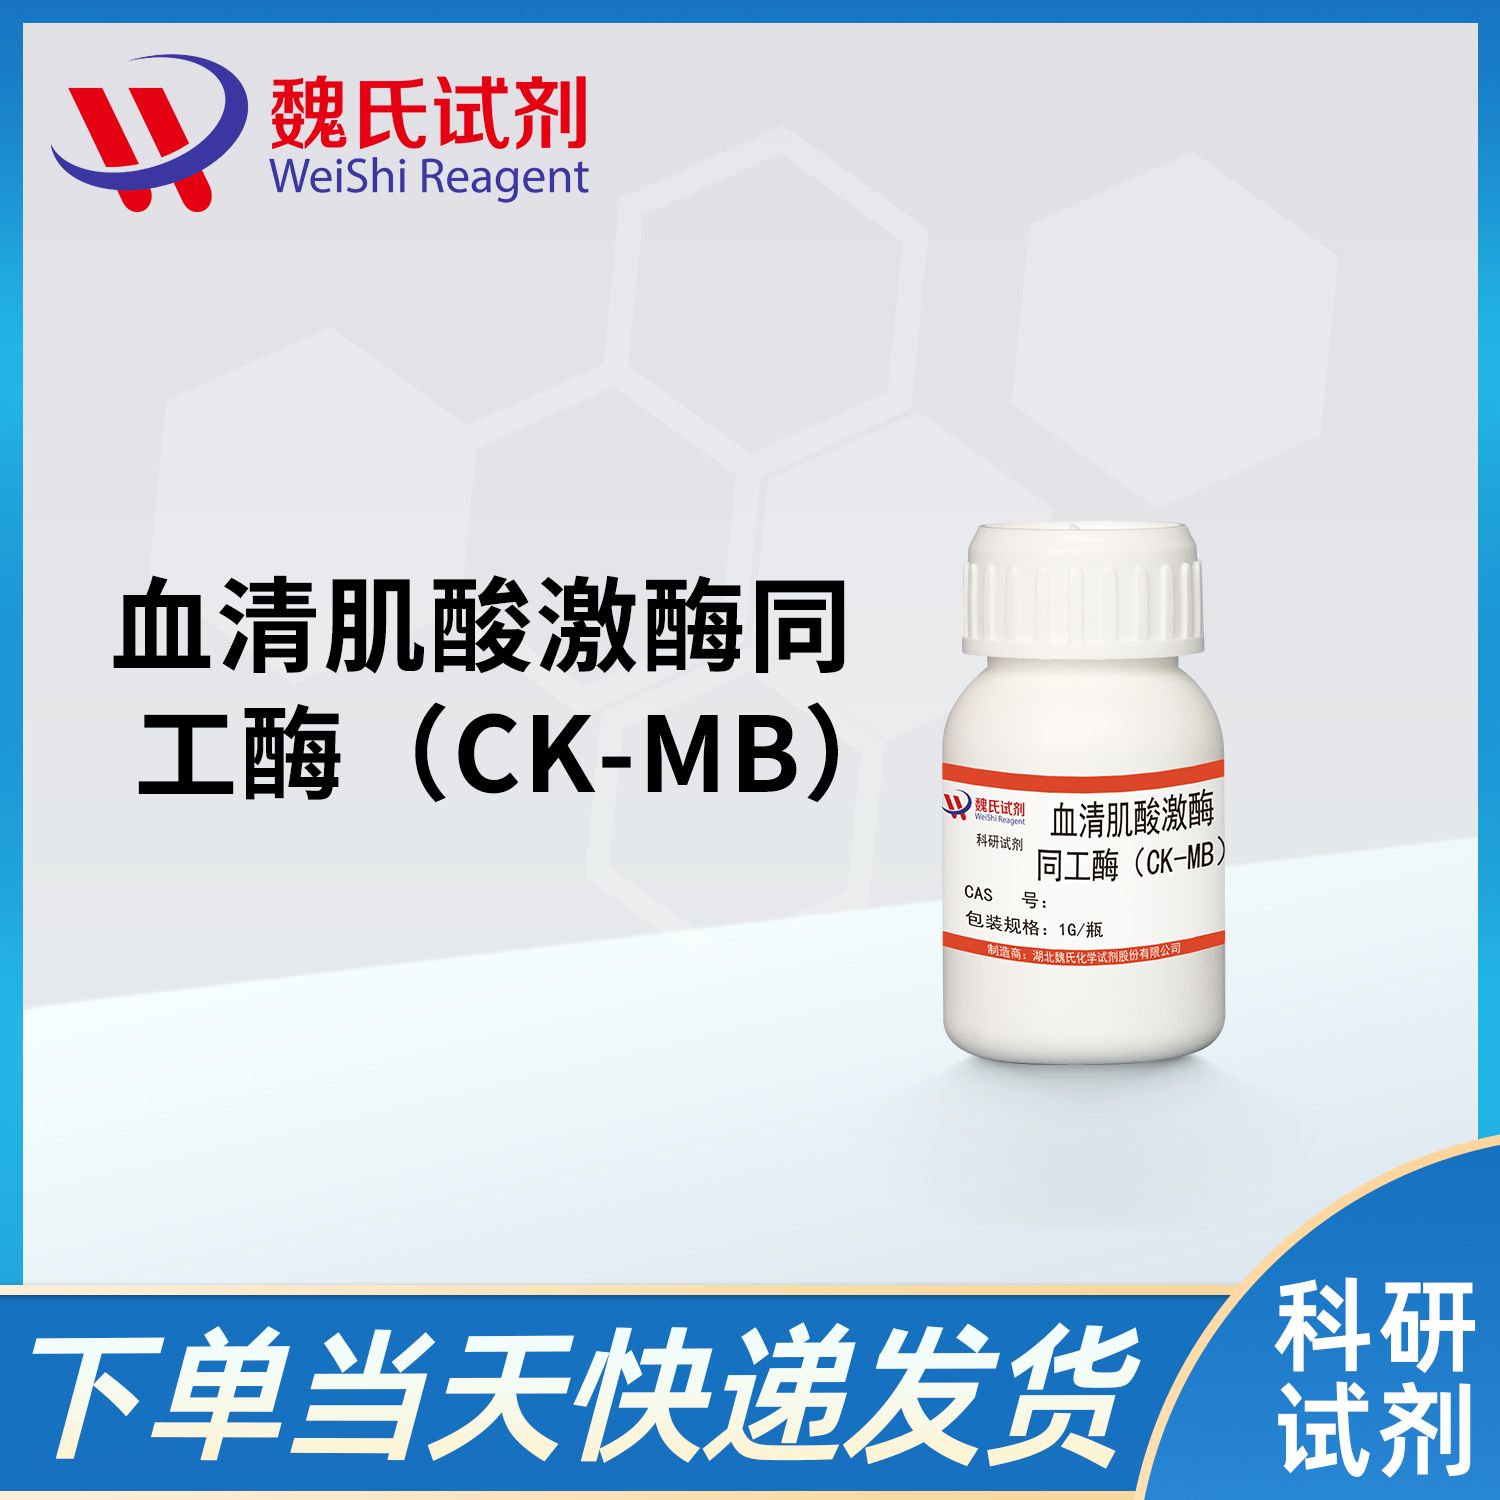 血清肌酸激酶同工酶（CK-MB）/Creatine Kinase-MB